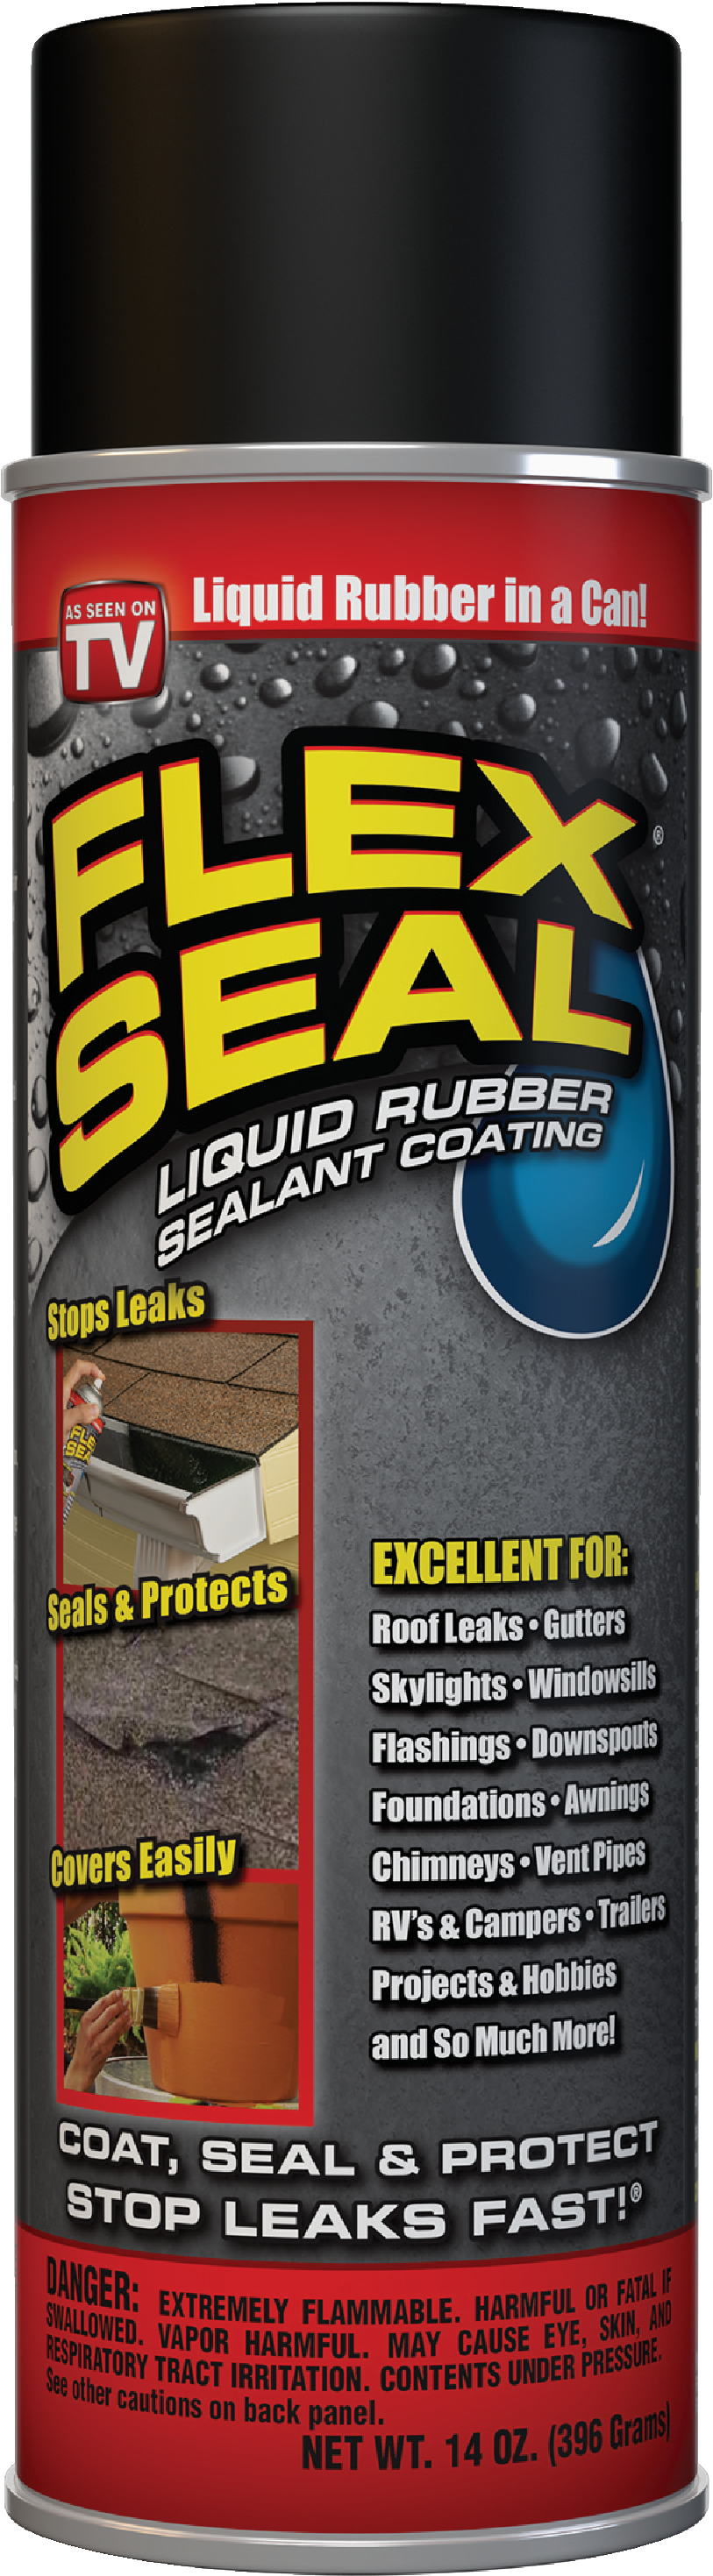 Flex Seal Liquid Rubber Sealant Coating 1 gal. Black Can